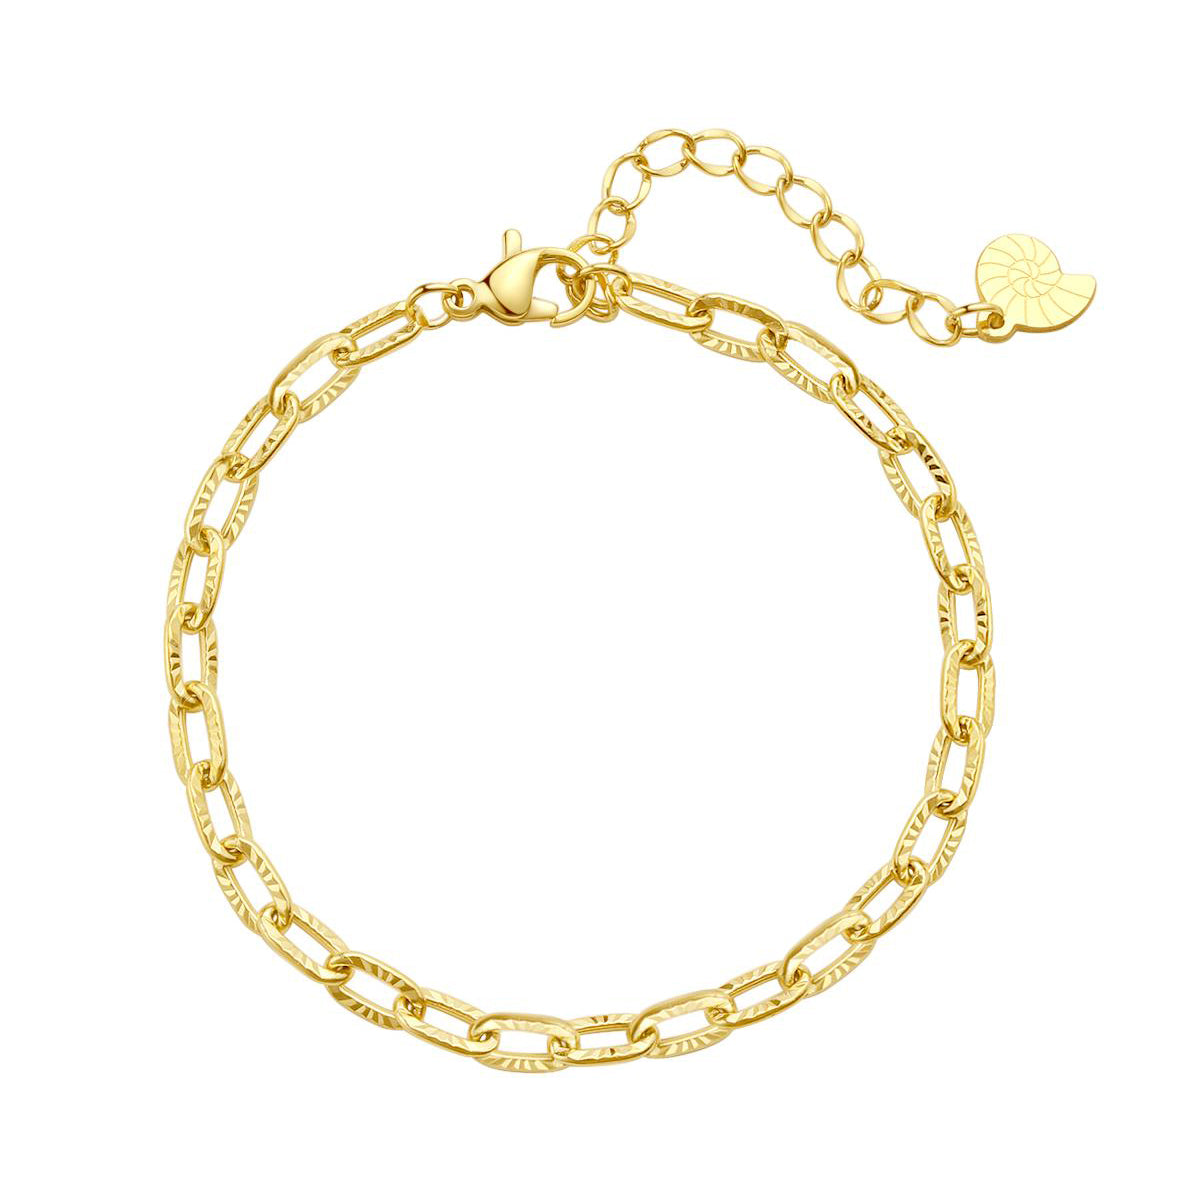 Strukturiertes Armband in Gliederkette-Design in Gold